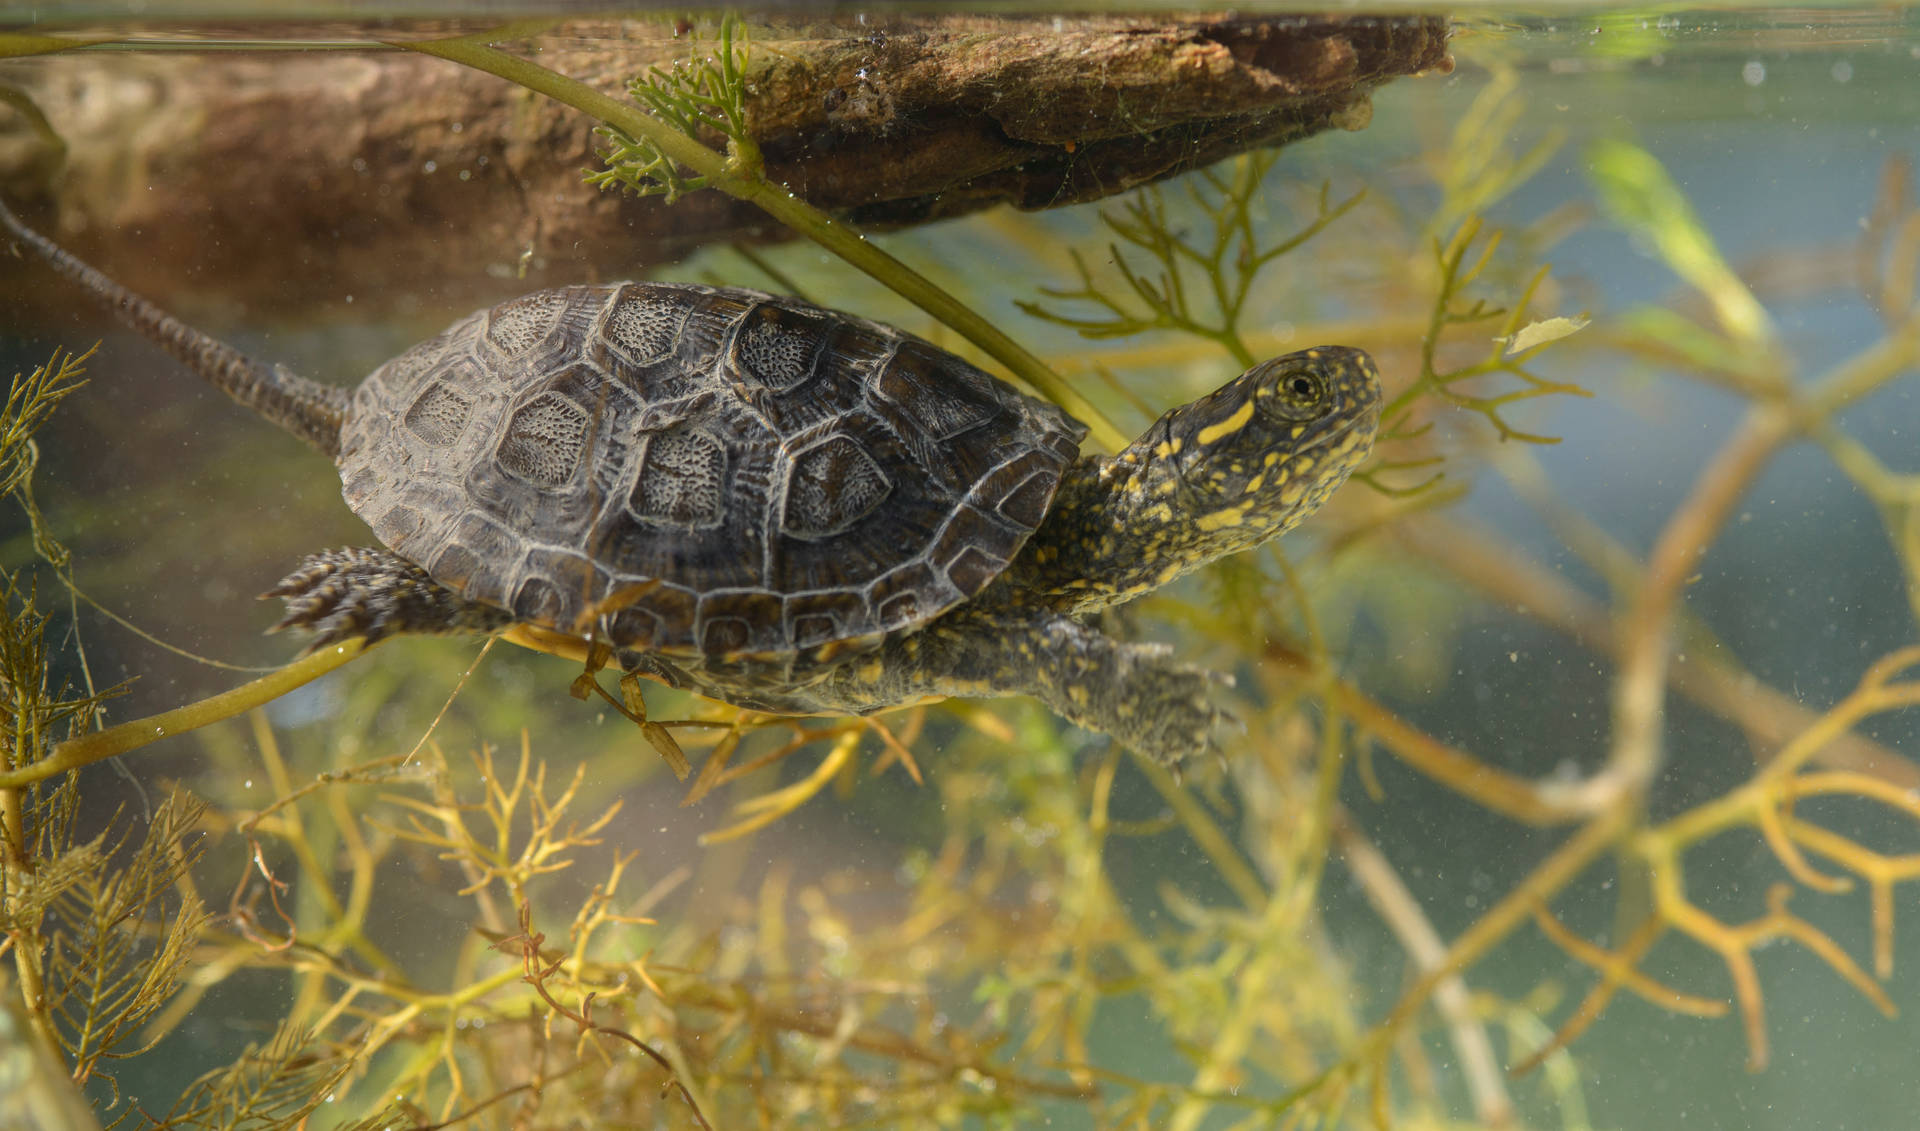 Europäischeteichwasserschildkröte - Naturfotografie Wallpaper